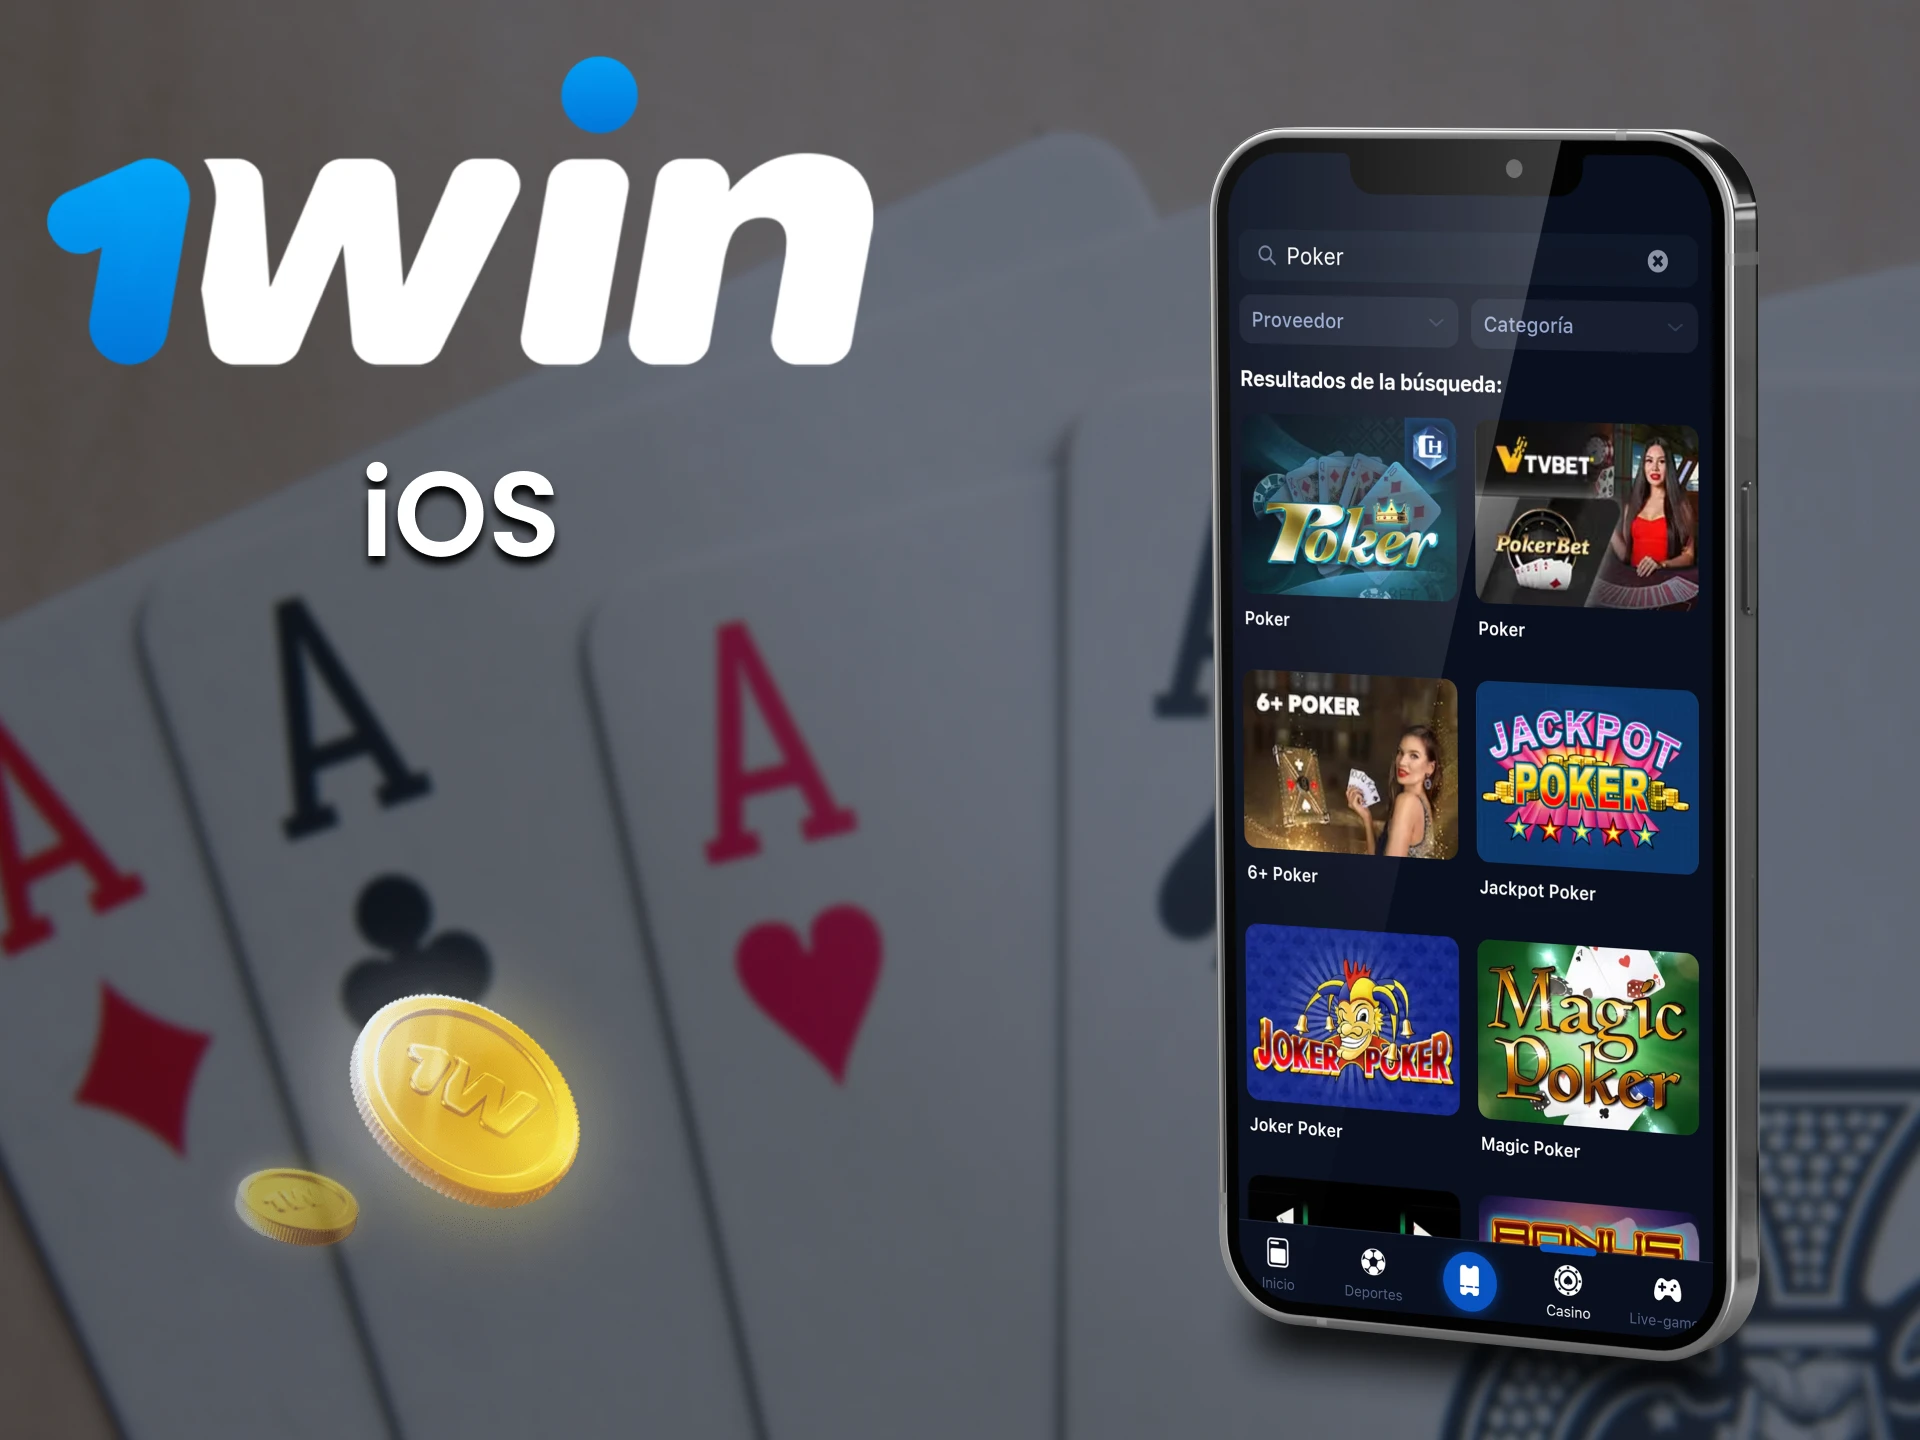 Juega al póquer con la aplicación 1win para iOS.